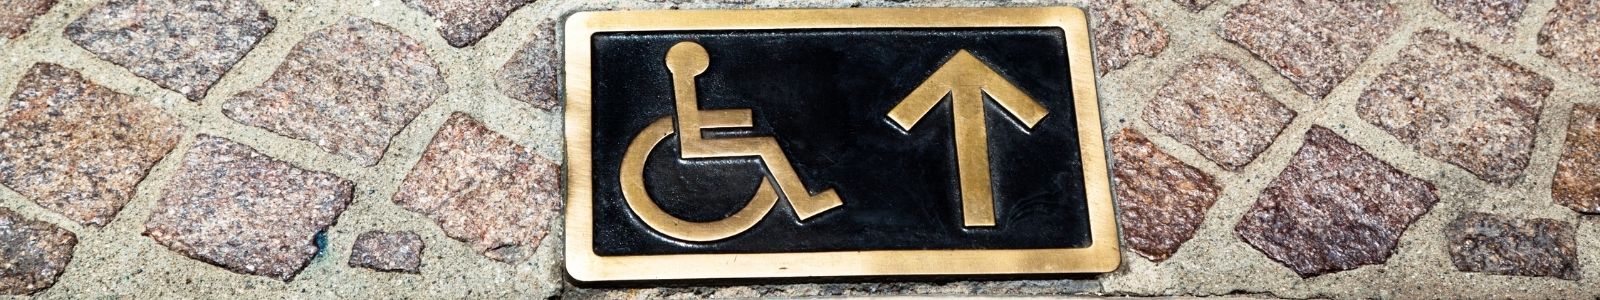 wheelchair sign on sidewalk